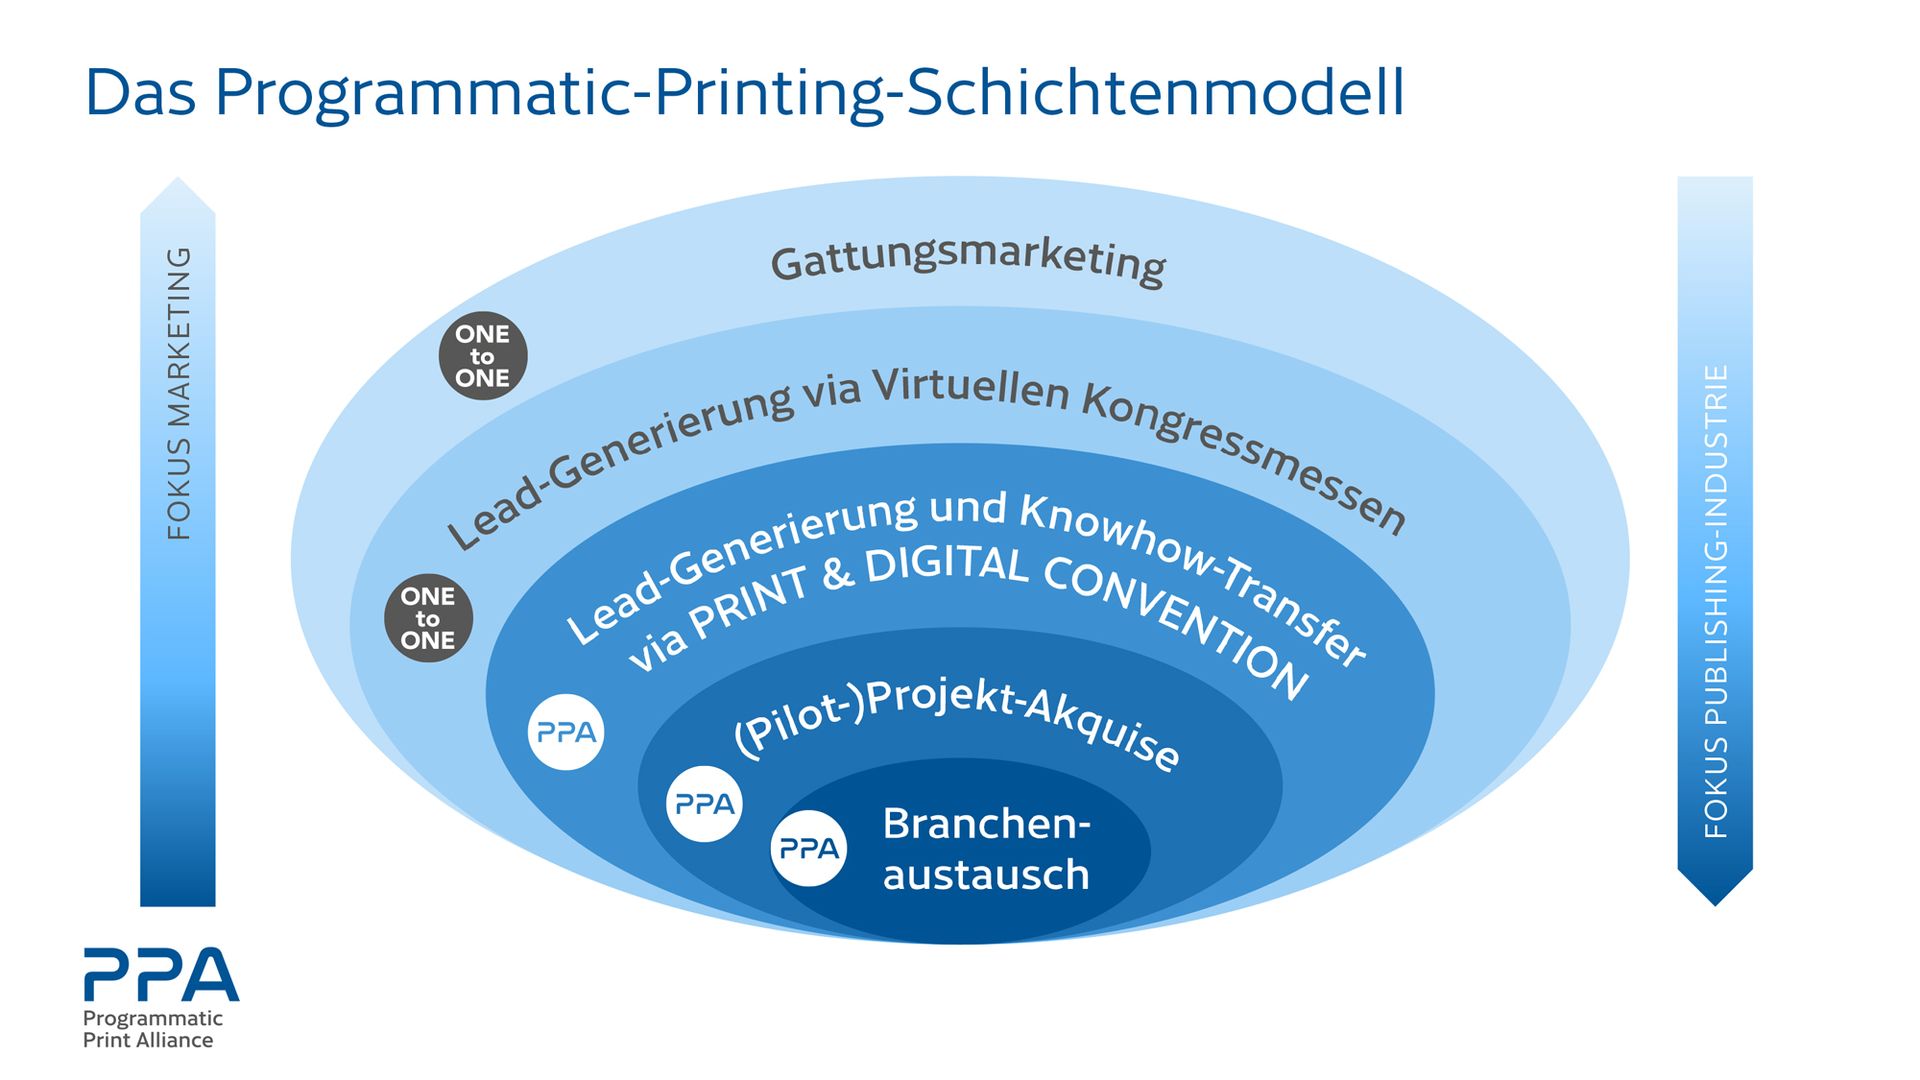 Das Programmatic-Printing-Schichtenmodell